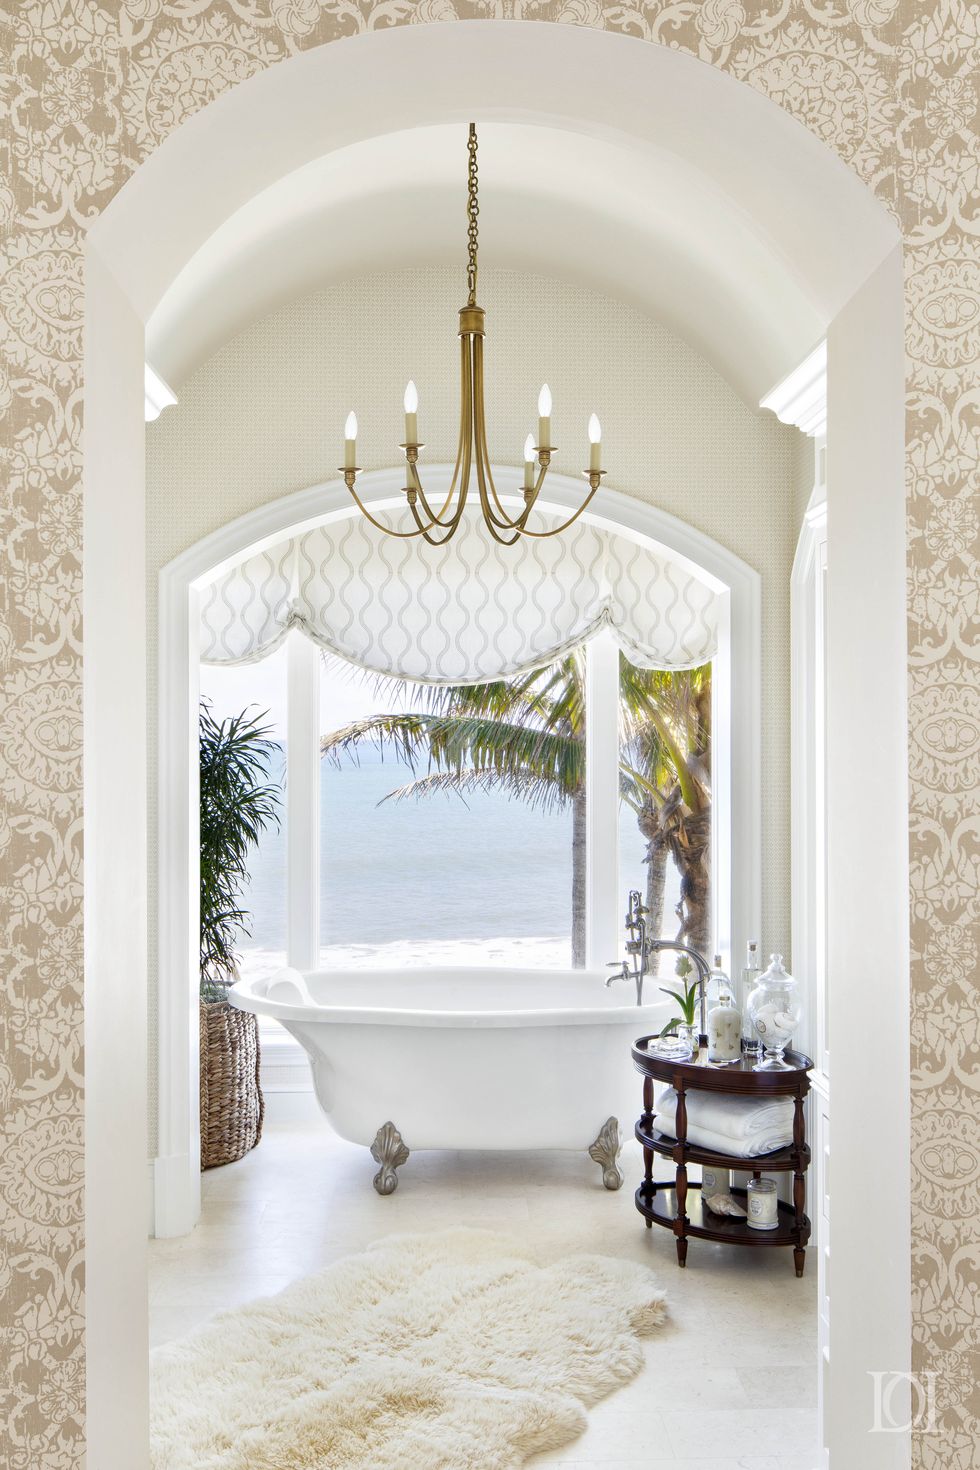 Phòng tắm thiết kế theo phong cách Địa Trung Hải với những ô cửa mái vòm duyên dáng, nội thất sang trọng với bồn tắm nằm, thảm chân, đèn chùm,... và đặc biệt là khung cảnh biển xanh và hàng dừa tươi đẹp bên ngoài.